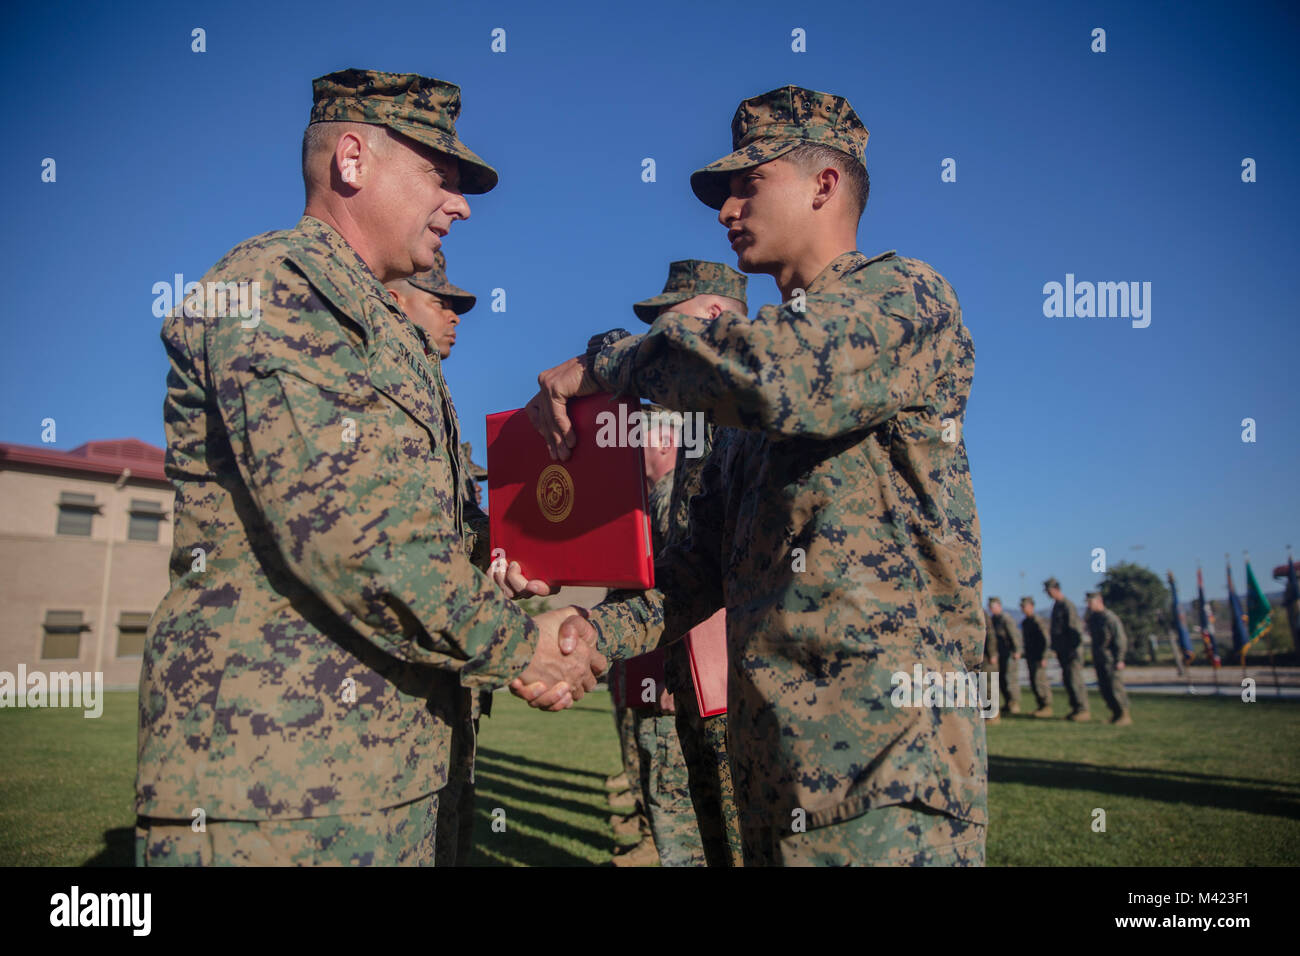 Lance Cpl. Rudy Huerta, un ingeniero de combate con el 7º Batallón de apoyo de ingenieros, 1st Marine Logistics Group, se adjudica la Marina del cuarto premio Brig. Gen Stephen Sklenka, el comandante general de la 1ª MLG, durante una ceremonia de entrega de premios trimestrales en Camp Pendleton, California, 8 de febrero de 2018. La ceremonia de entrega de premios permite a los Marines y marineros del 1er MLG para ser reconocidos y premiados por su ejemplar servicio y desempeño en sus funciones. (Ee.Uu. Marine Corps foto por CPL. Adam Dublinske) Foto de stock